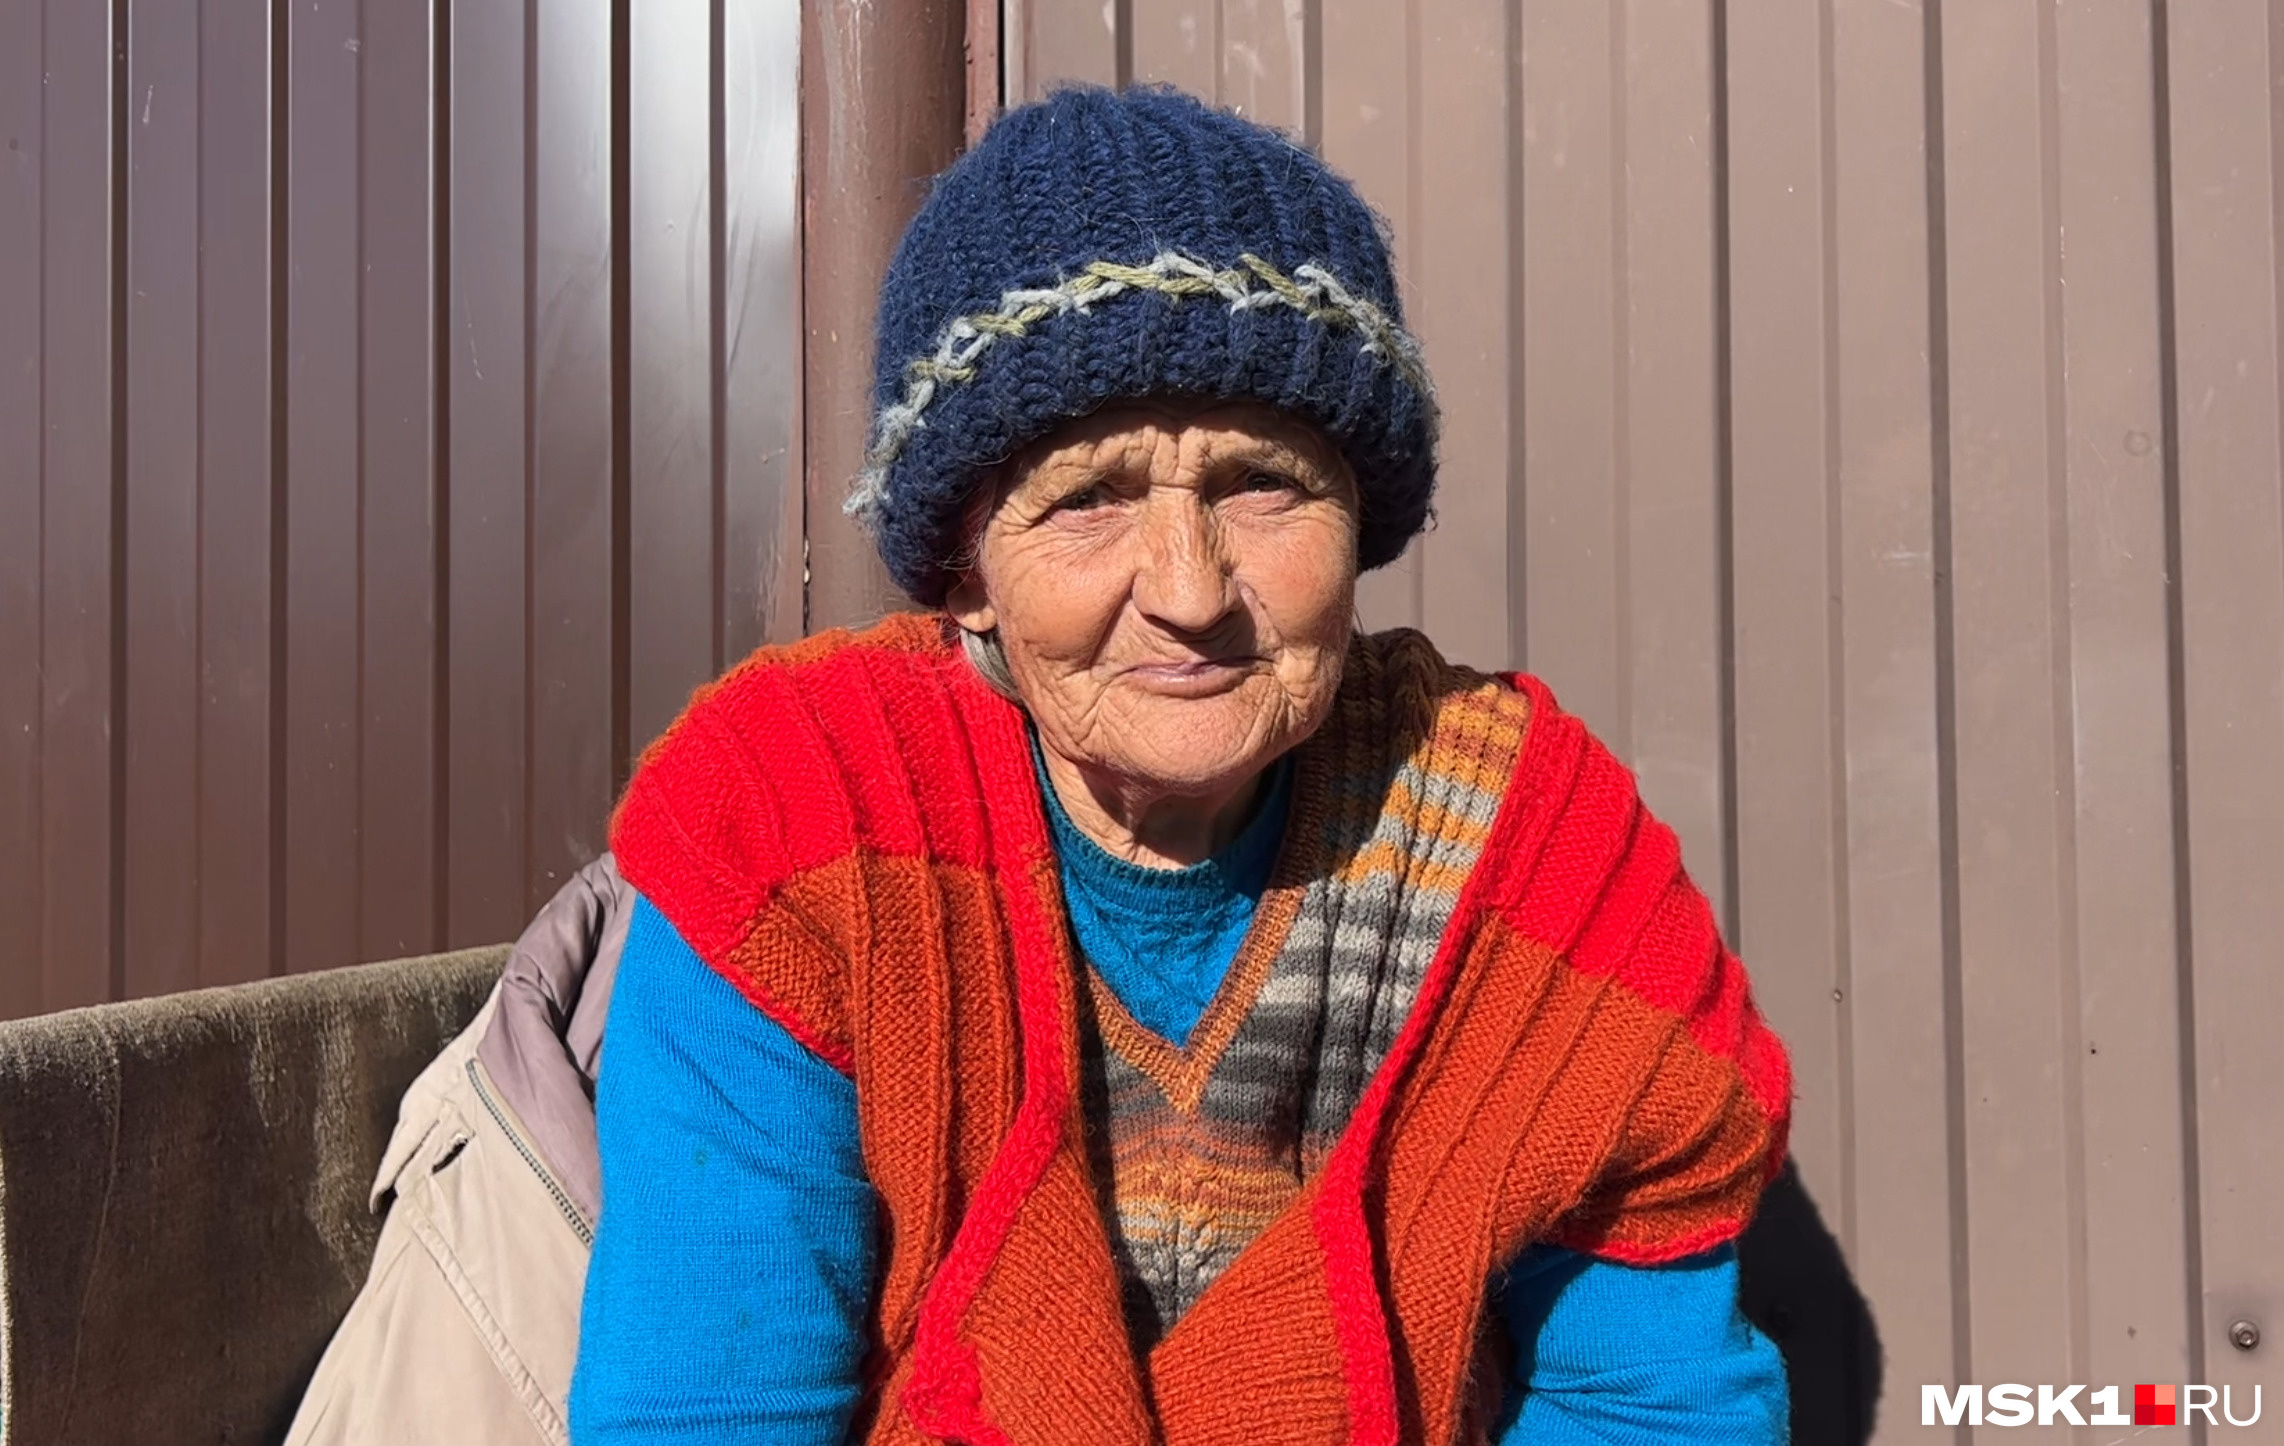 Евгении Дмитриевне 83 года. В войну, будучи еще ребенком, она пряталась в подвале своего дома